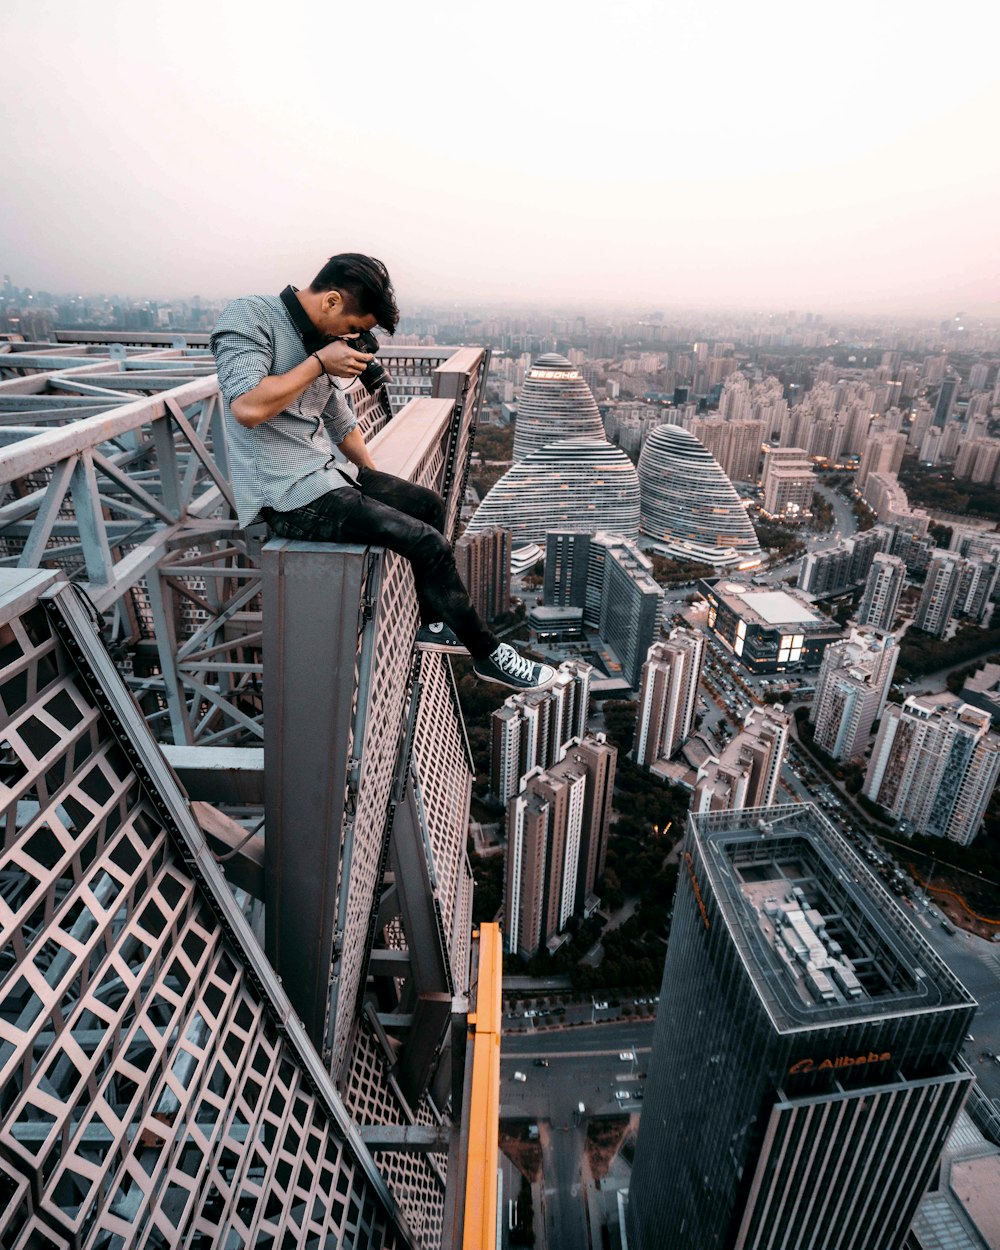 Mann sitzt auf dem Dach des Gebäudes und fotografiert unten